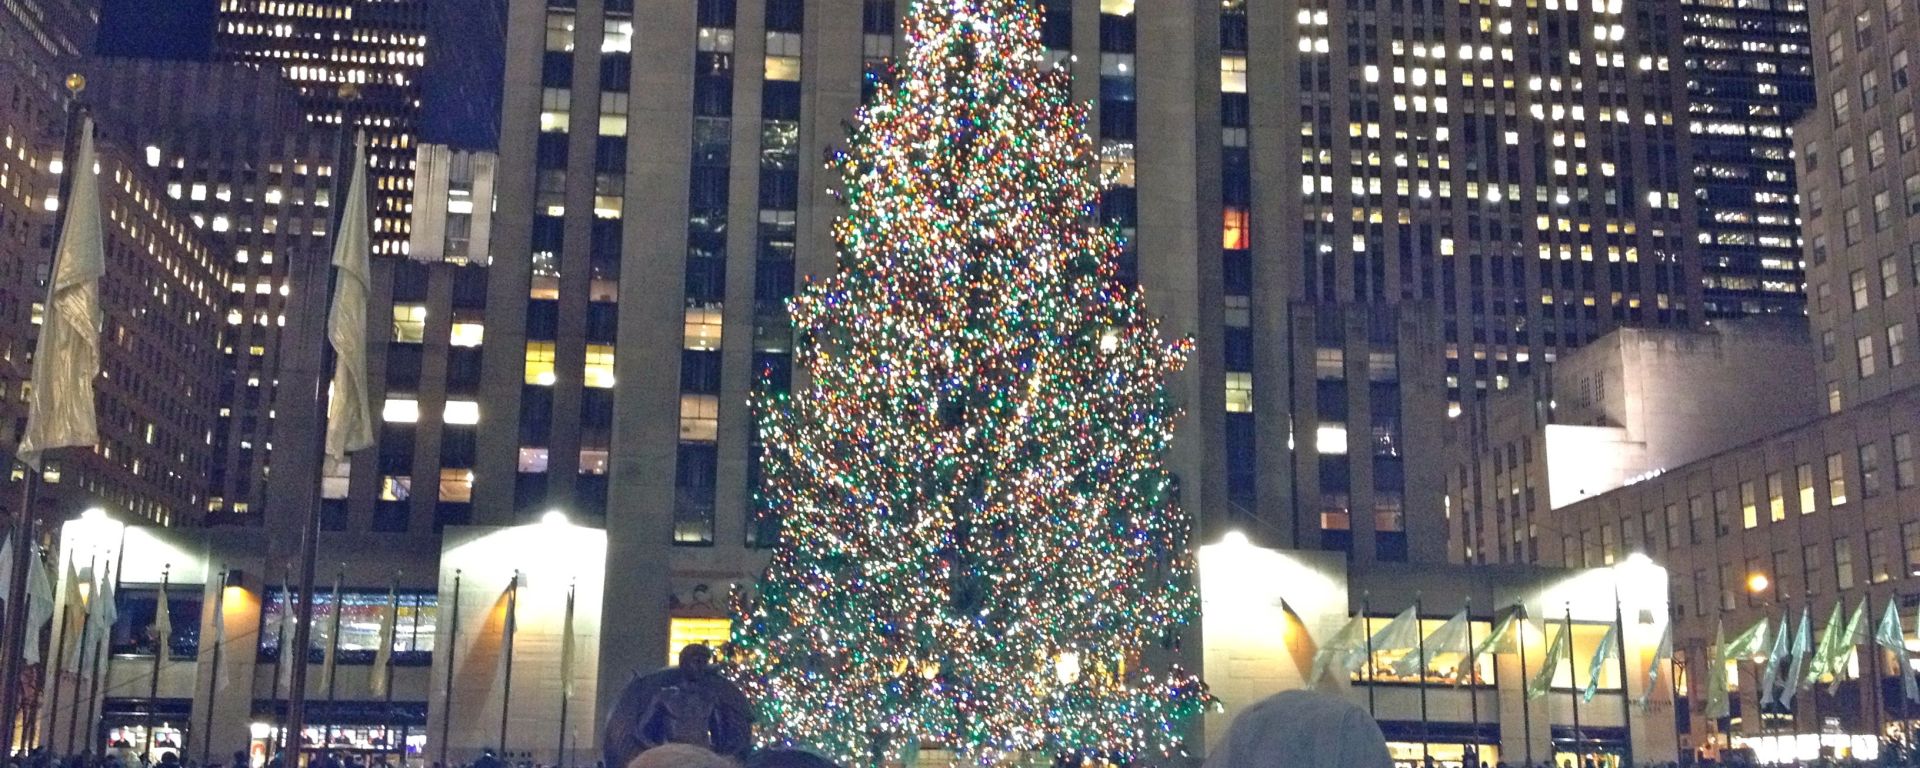 ニューヨークのクリスマスの象徴ロックフェラーツリーのちょっといい話 My Favorite Christmas Tree Story From New York Megumedia New York